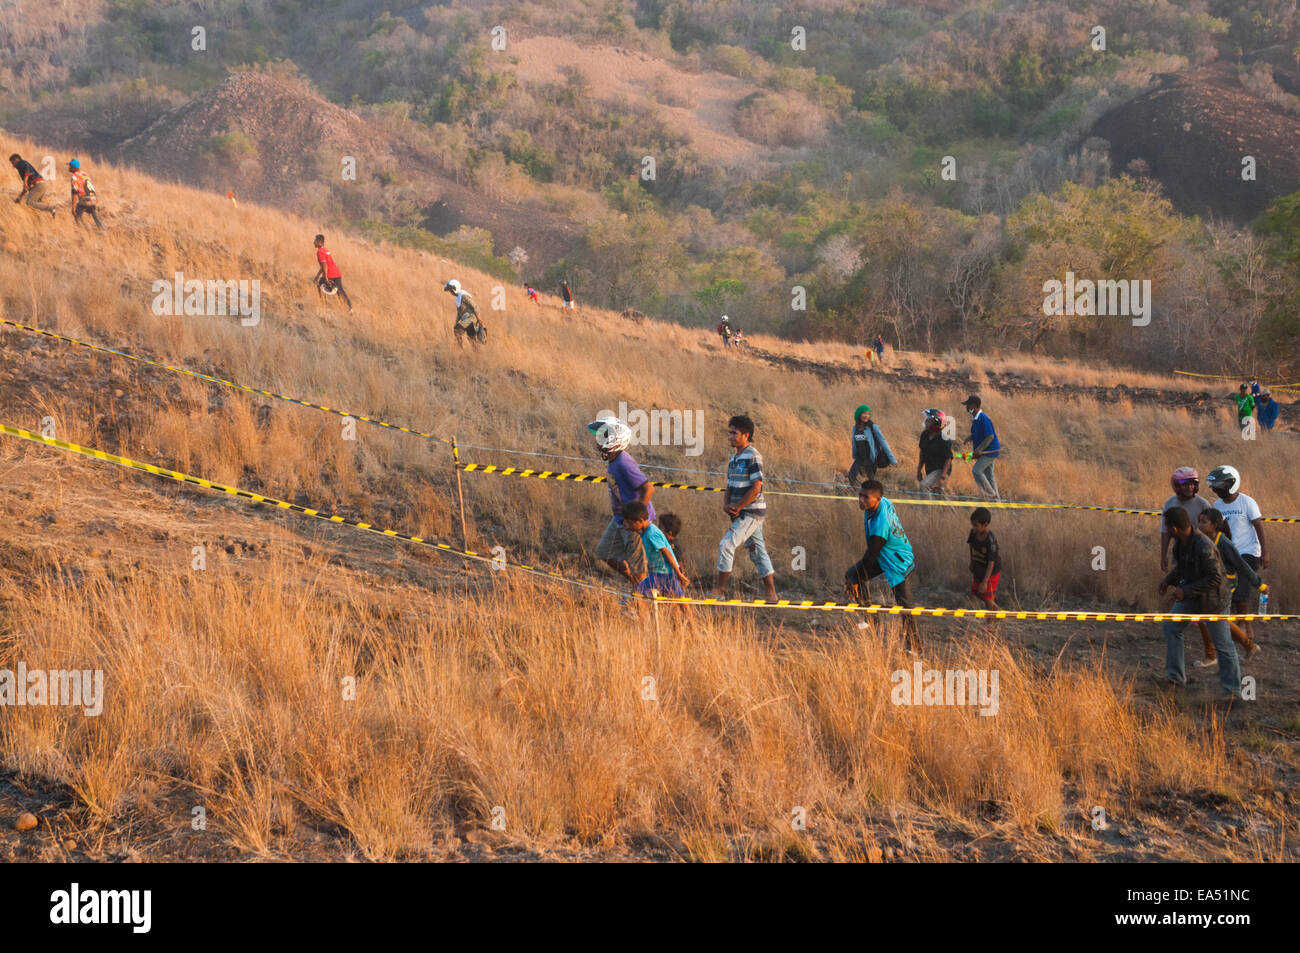 Menschen vor Ort durch ein vier-Rad-Antrieb Rennen Veranstaltungsort am Waijarang-Hügel, Lembata, Indonesien. Stockfoto